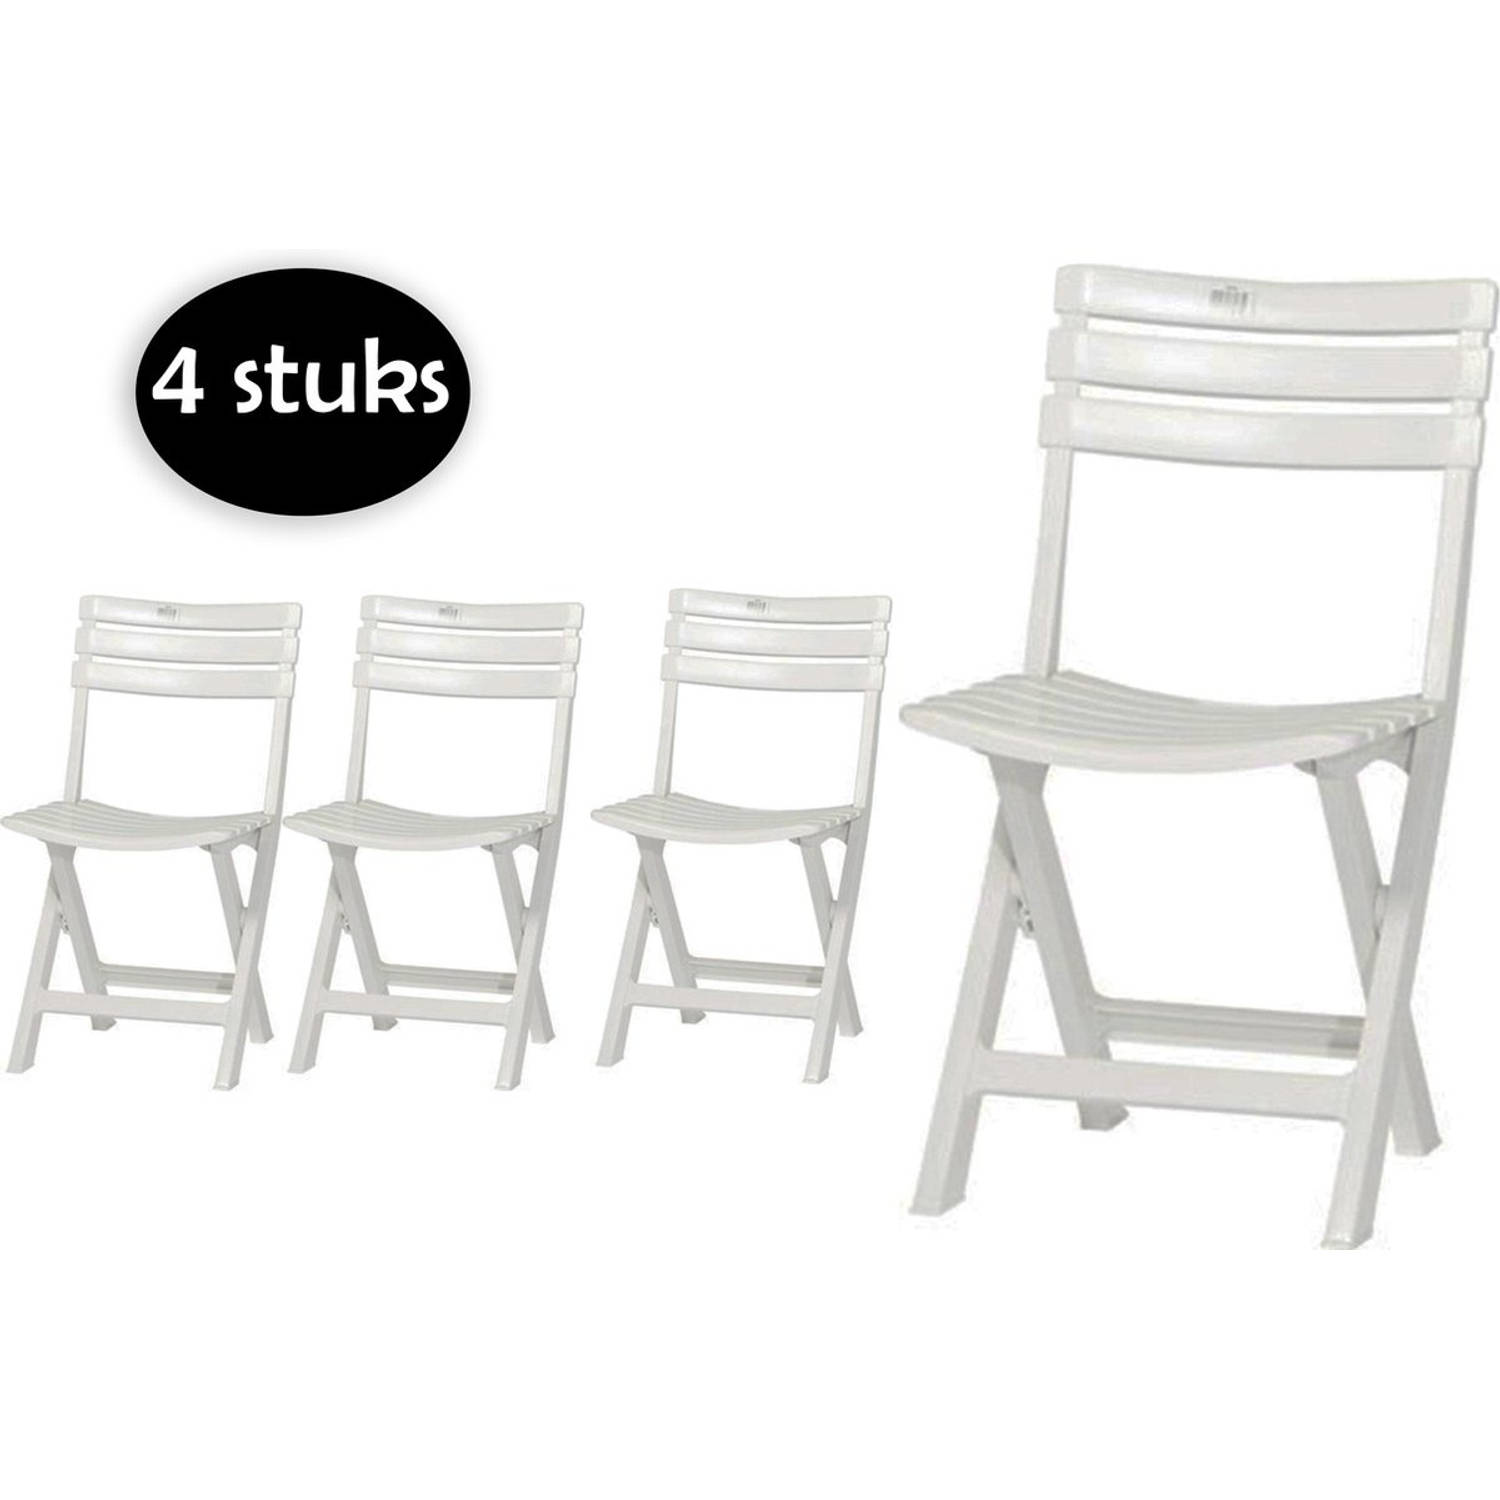 4 Stuks Witte Kunststof Klapstoelen Voor Binnen Of Buiten - 4x Robuuste Kunststof Klapstoel Wit Tuinstoel